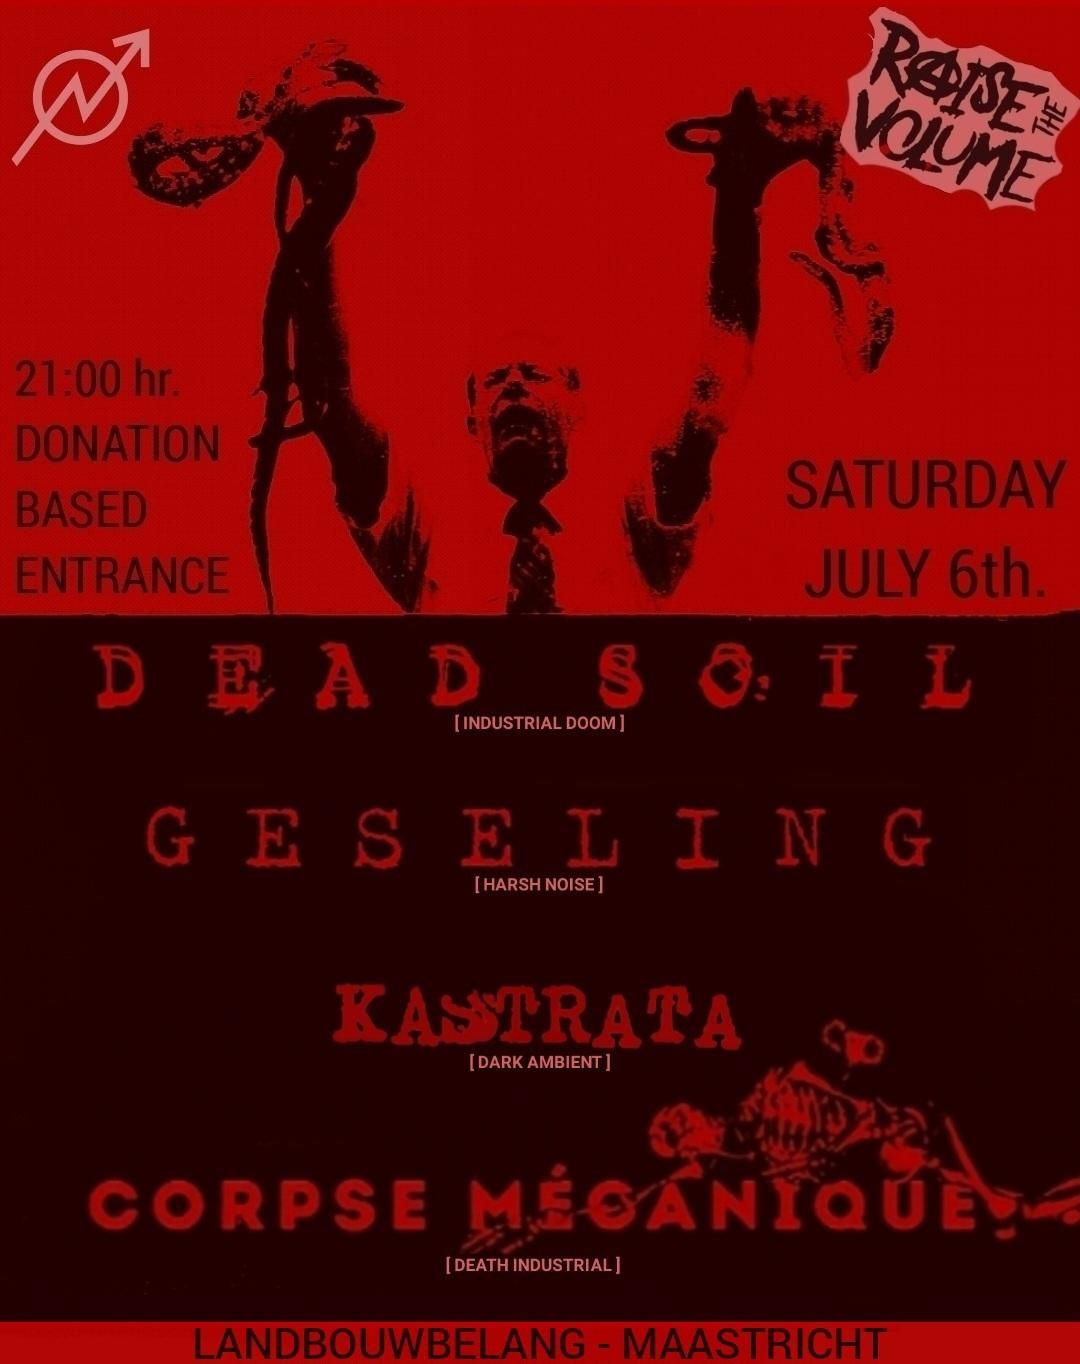 Noise & Doom at Landbouwbelang: Dead Soil, Geseling, Kastrata & Corpse M\u00e9canique